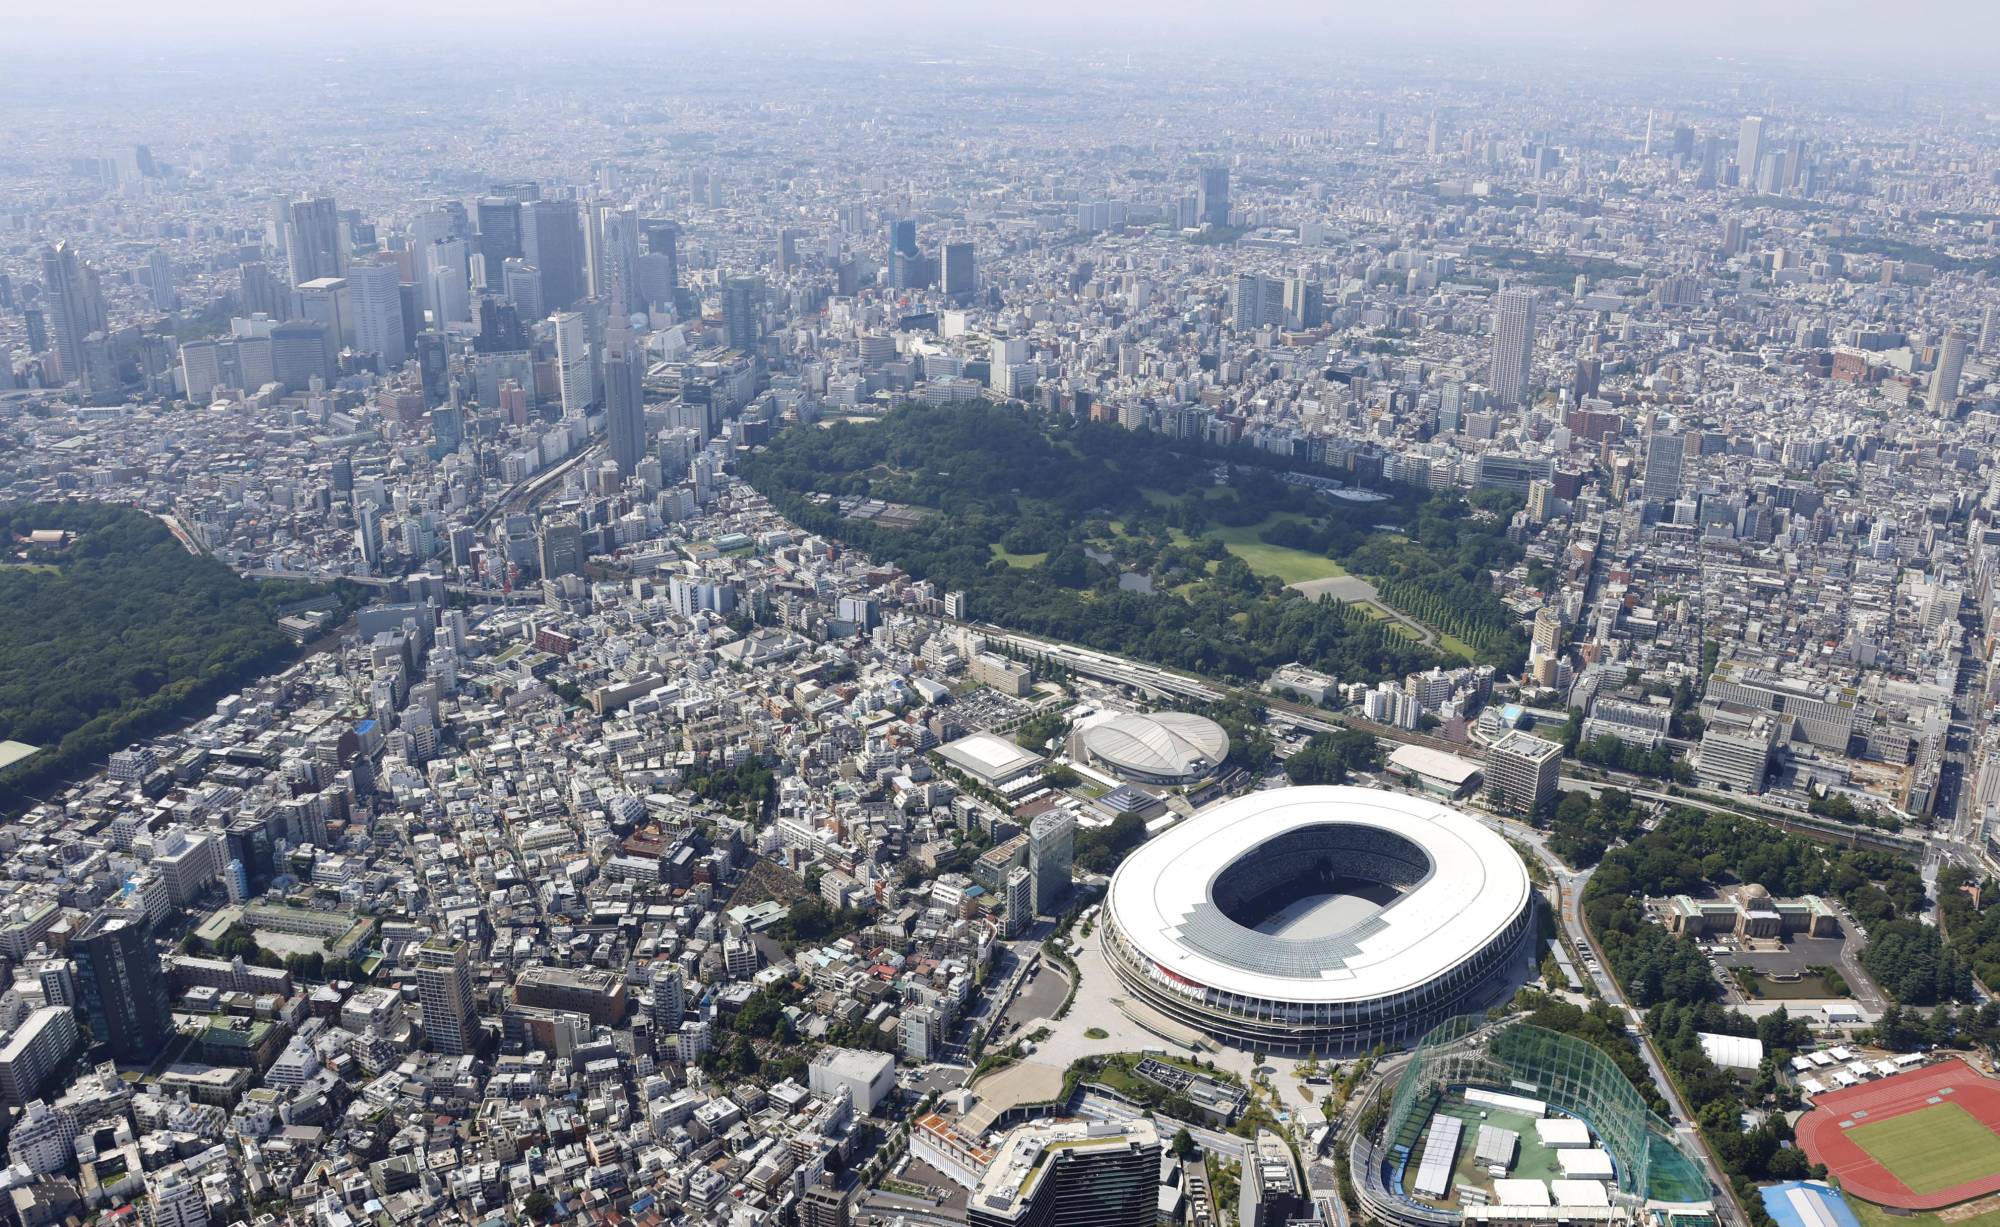 टोकियो ओलम्पिकमा १५ राष्ट्र र  ७० देशका खेलकुद मन्त्री सहभागी हुने अपेक्षा